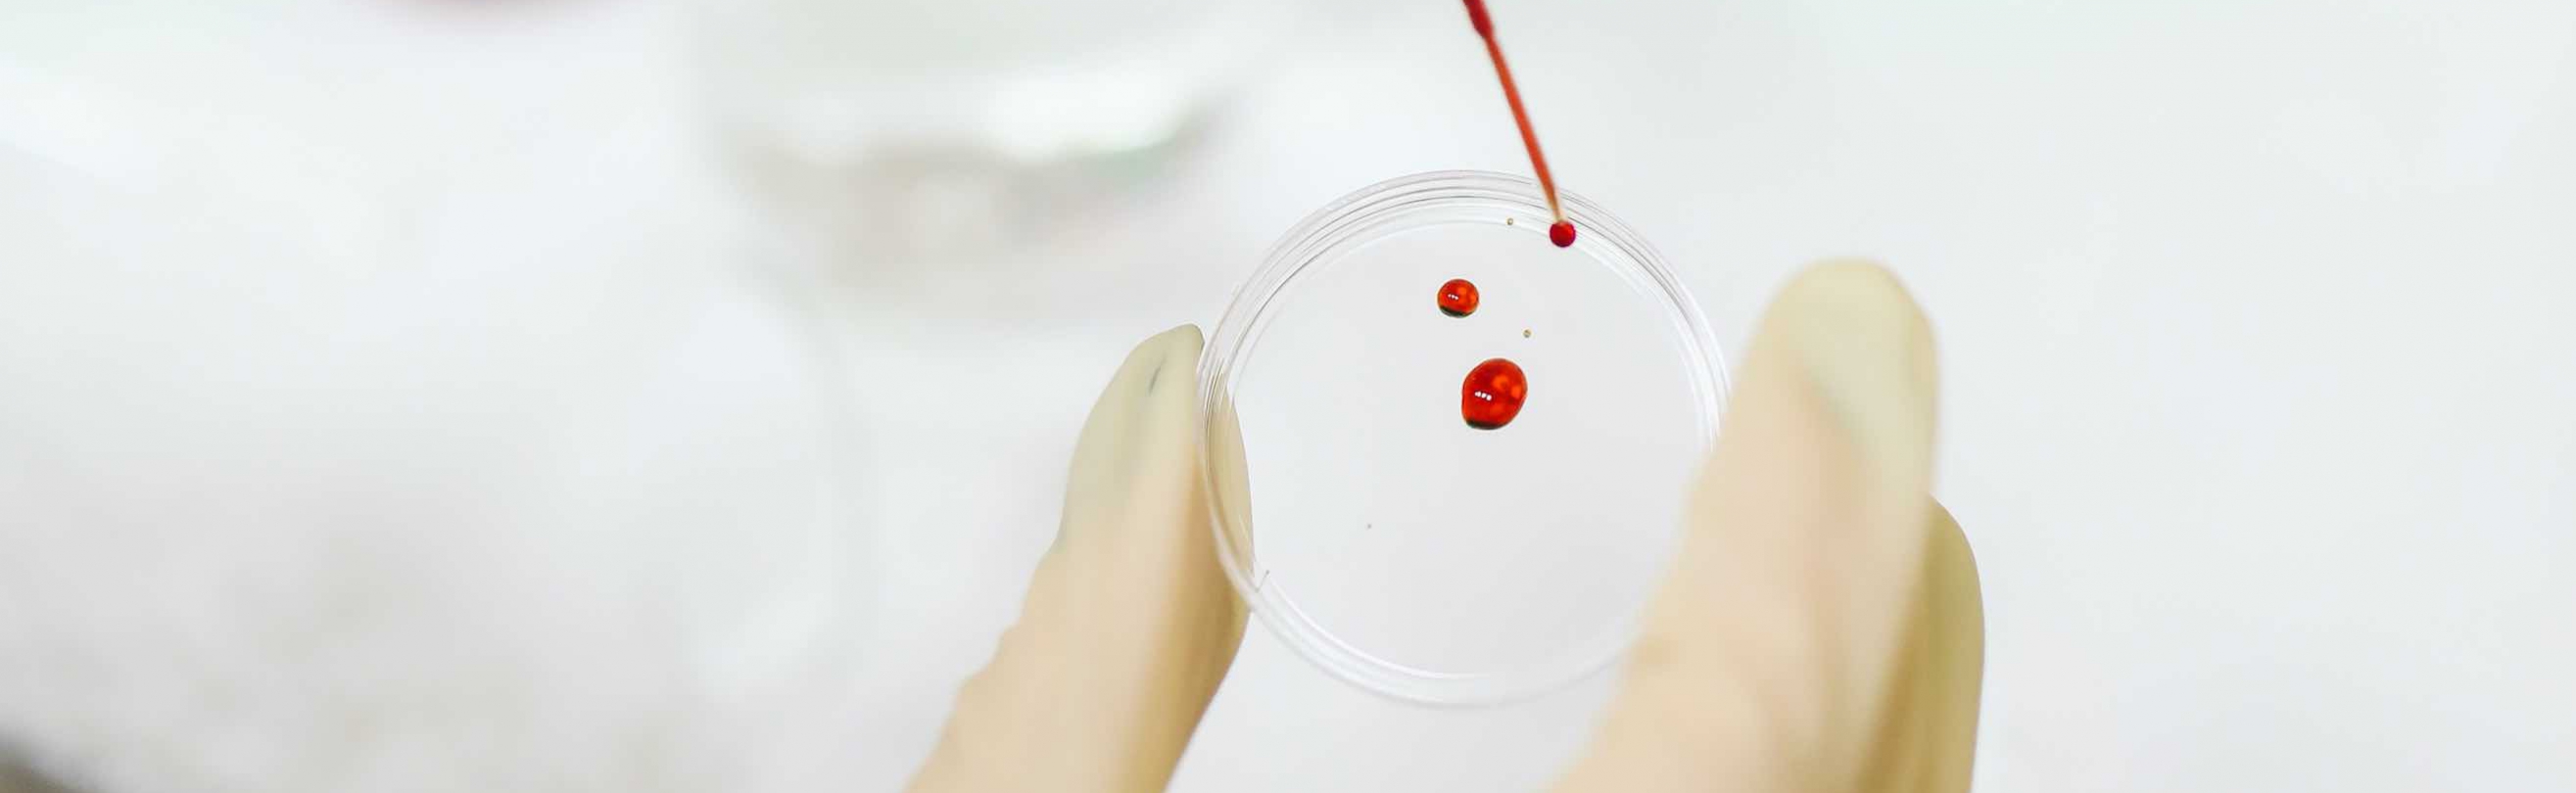 Blood in Petri dish